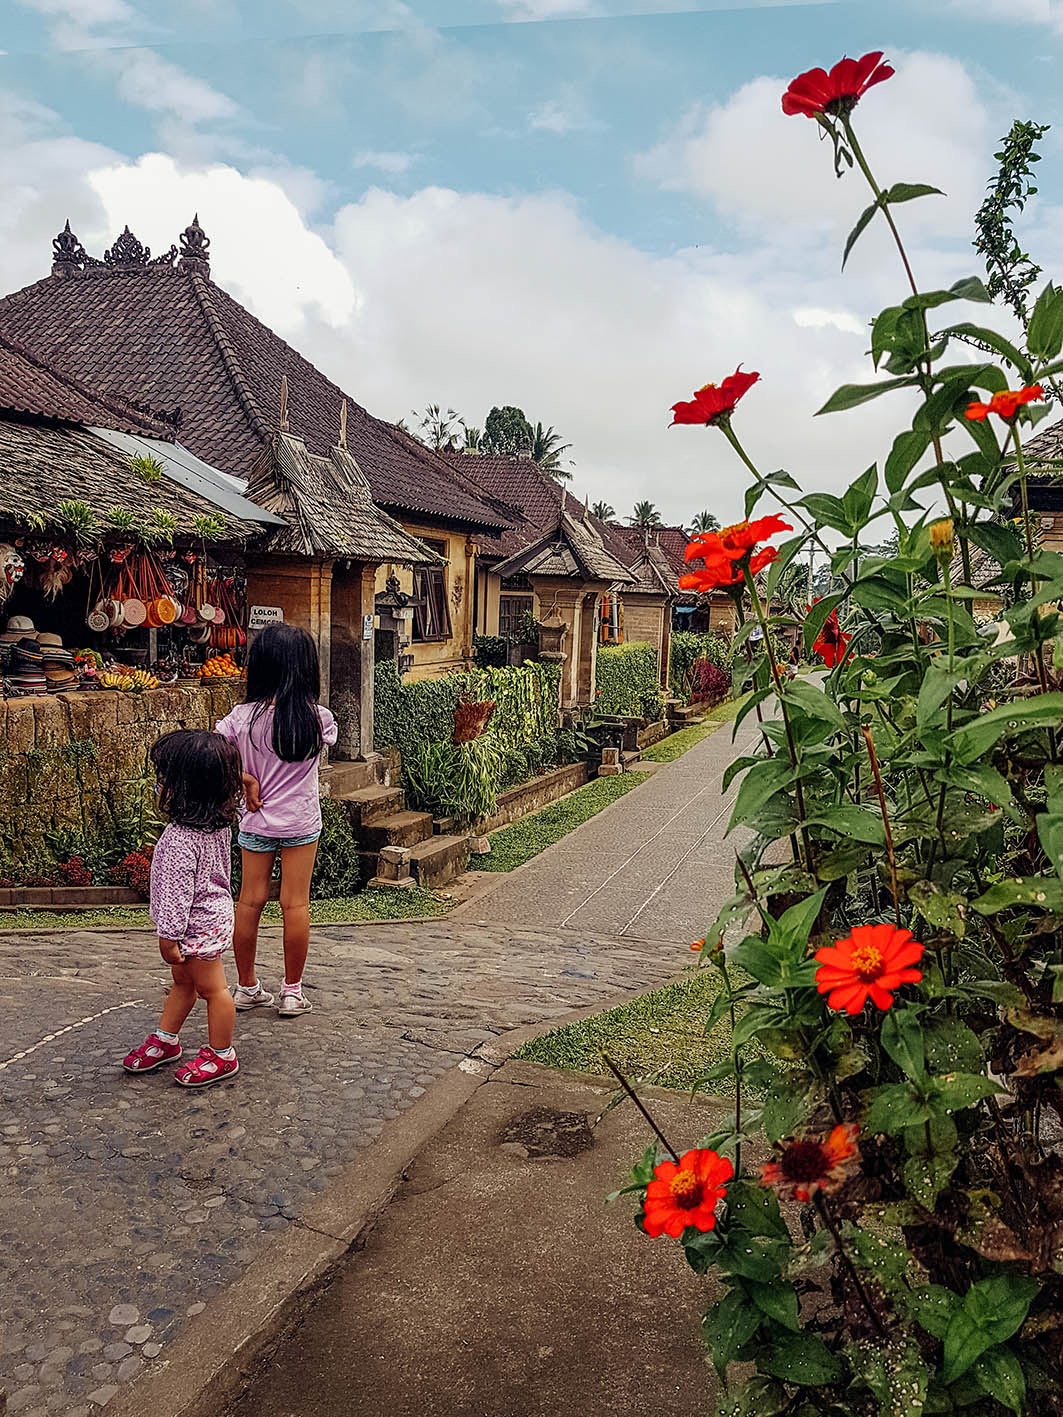 Il villaggio di Penglipuran a Bali. Due bambine vestite di rosa osservano le piccole case del villaggio di penglipuran a Bali fra i fiori rossi.